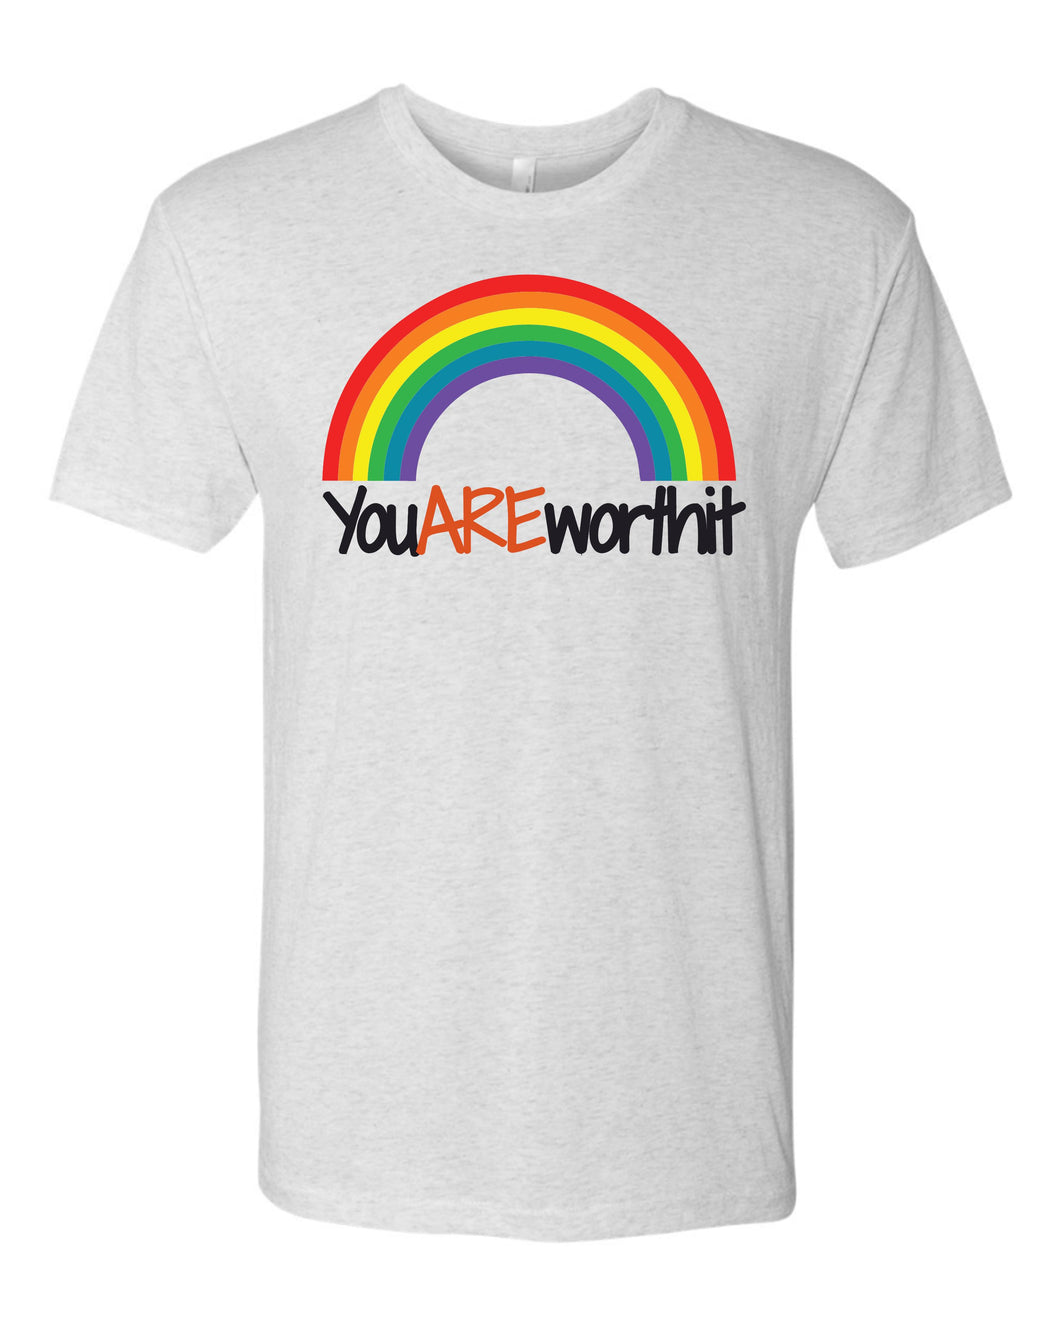 6010 Next Level - Logo Rainbow-YouAREworthit Cotton Short Sleeve Heather White Tri-blend